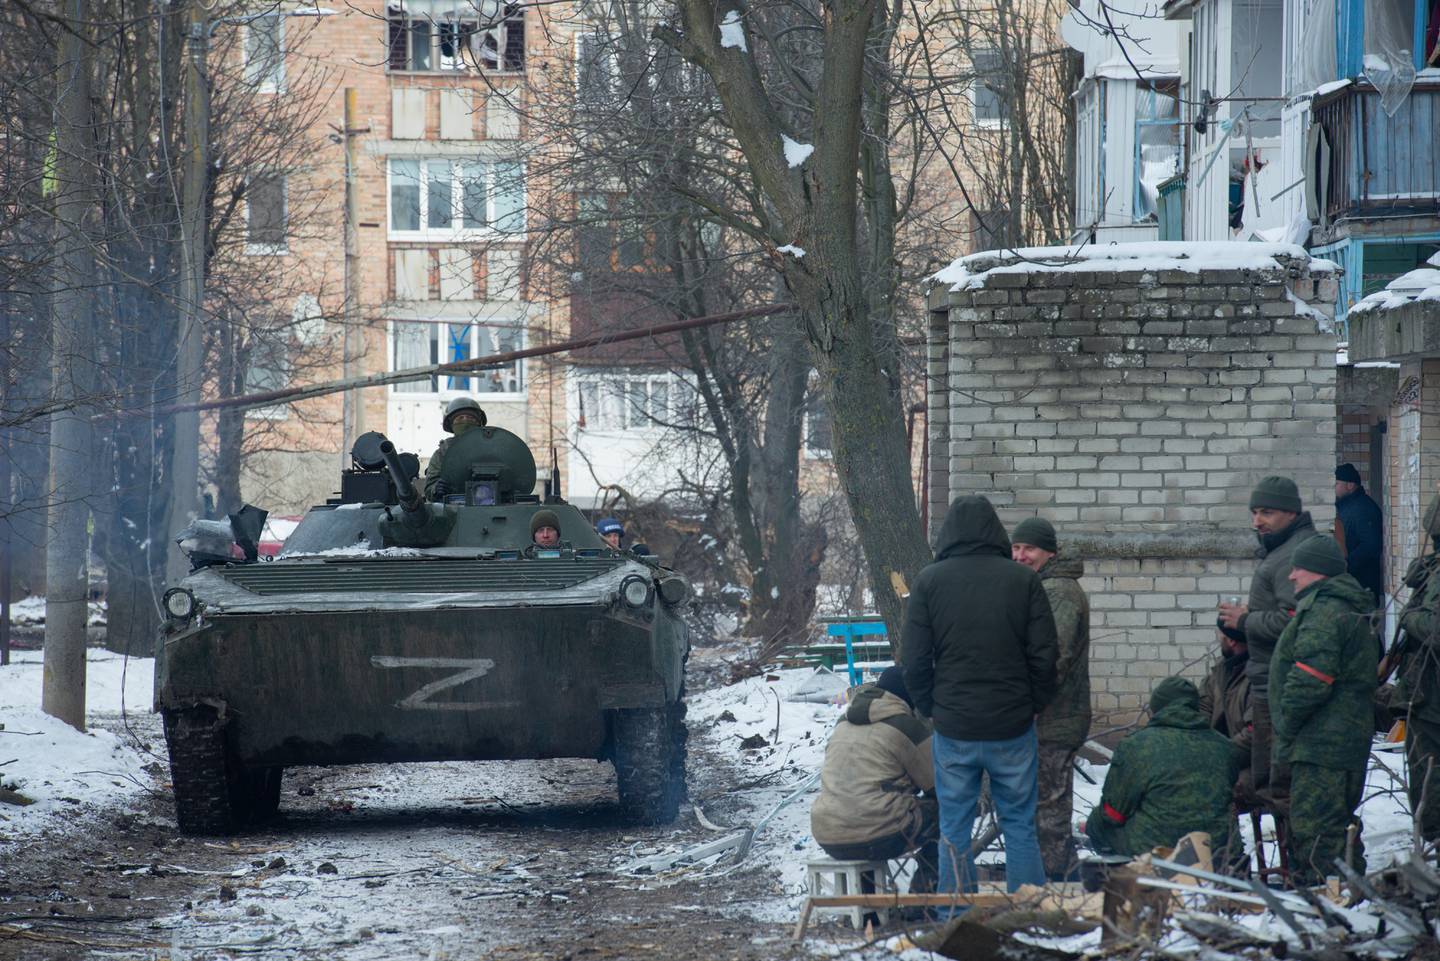 Tropas patrullan en Donetsk, Ucrania, controlado por Rusia, el 11 de marzo. Fuente: Agencia Anadolu/Getty Images